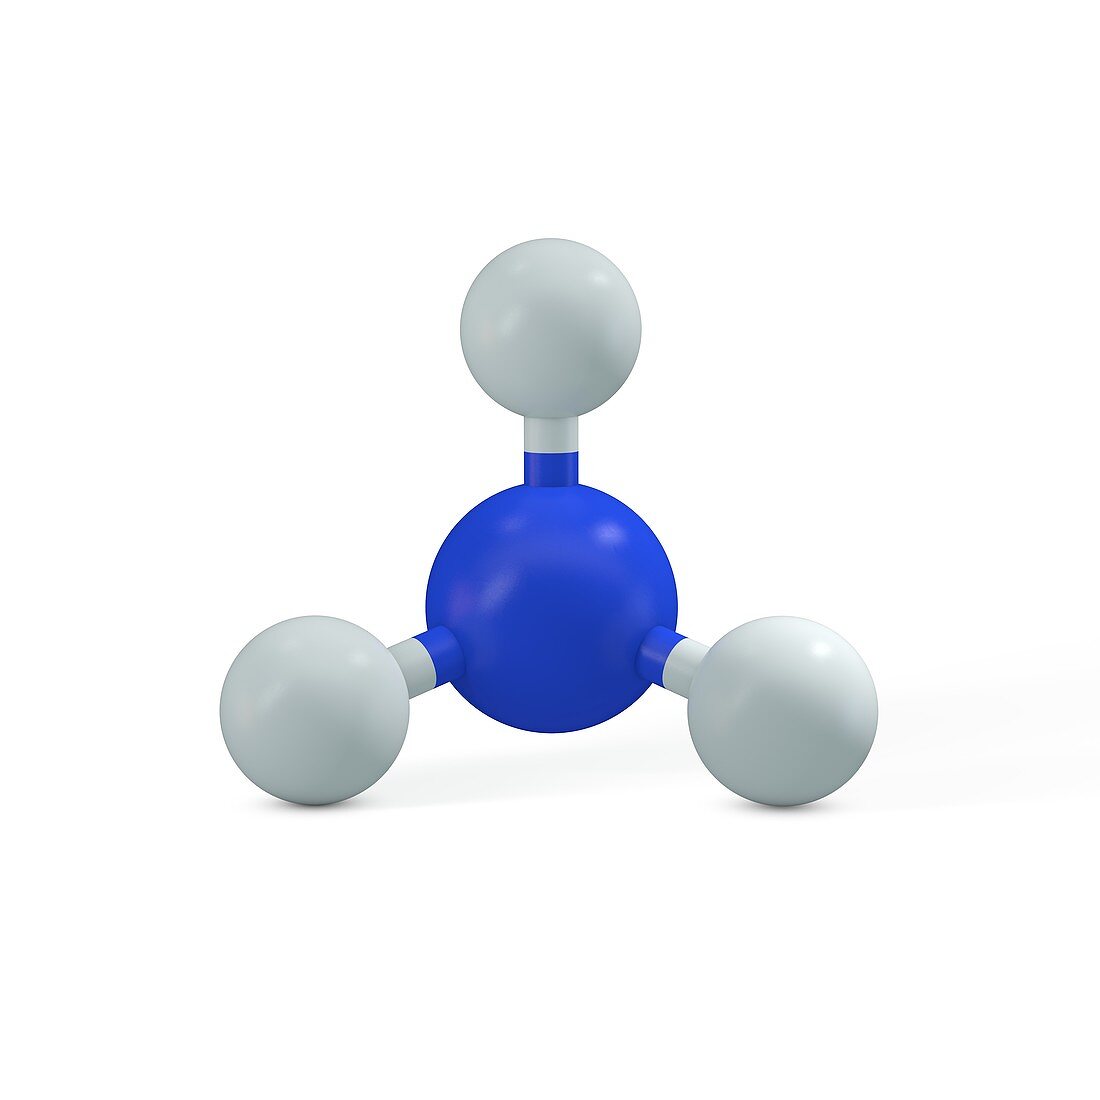 Ammonia molecule, illustration